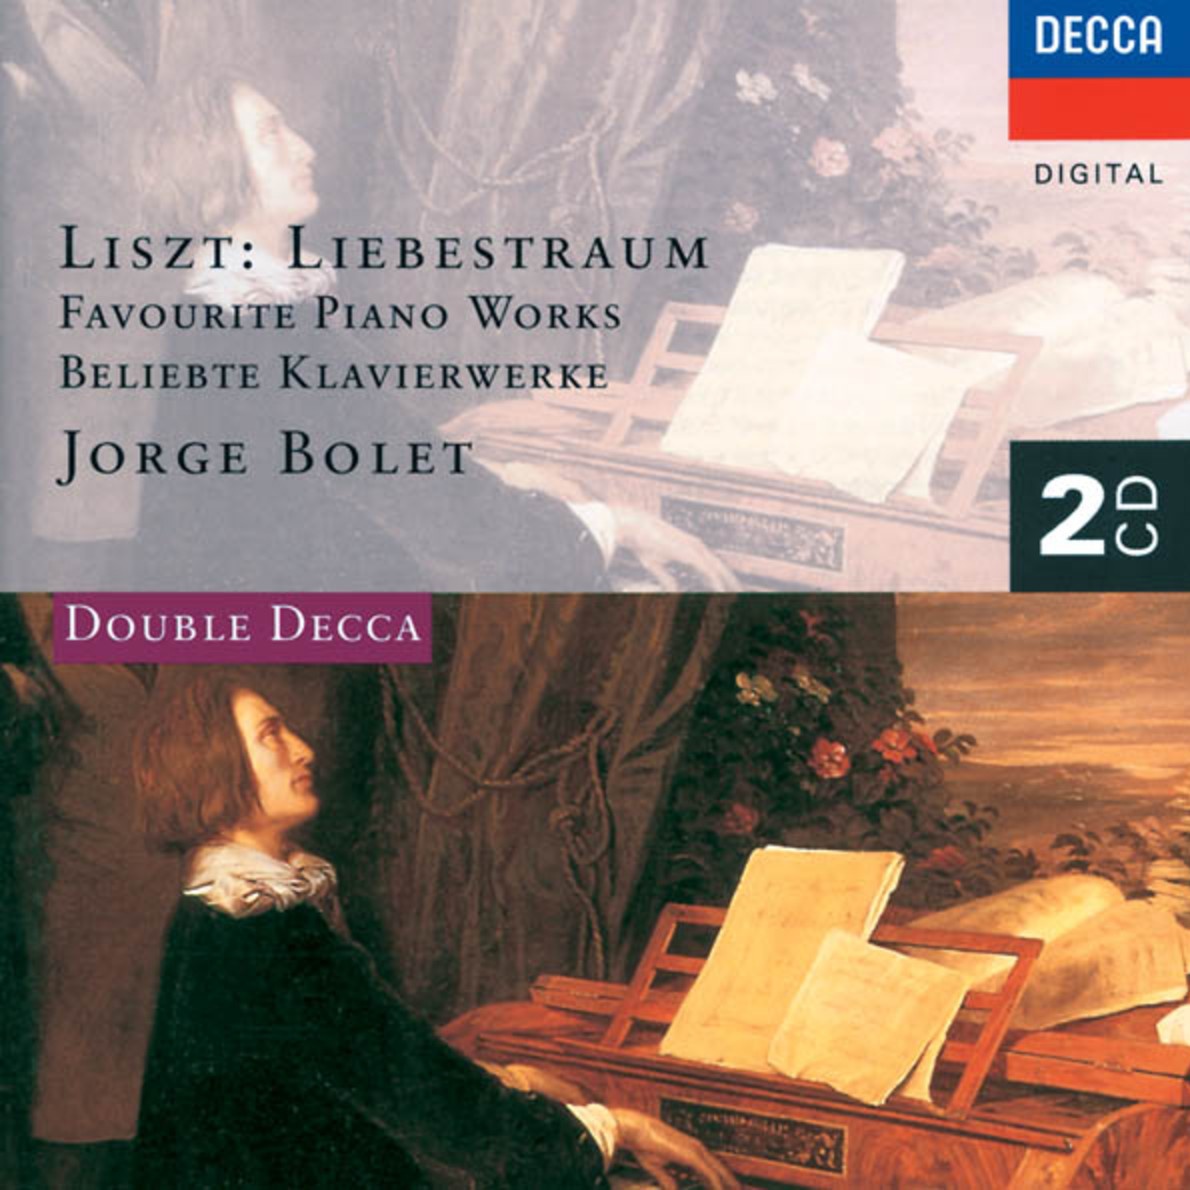 Liszt: 10 Harmonies poe tiques et religieuses, S. 173  No. 7 Fune railles